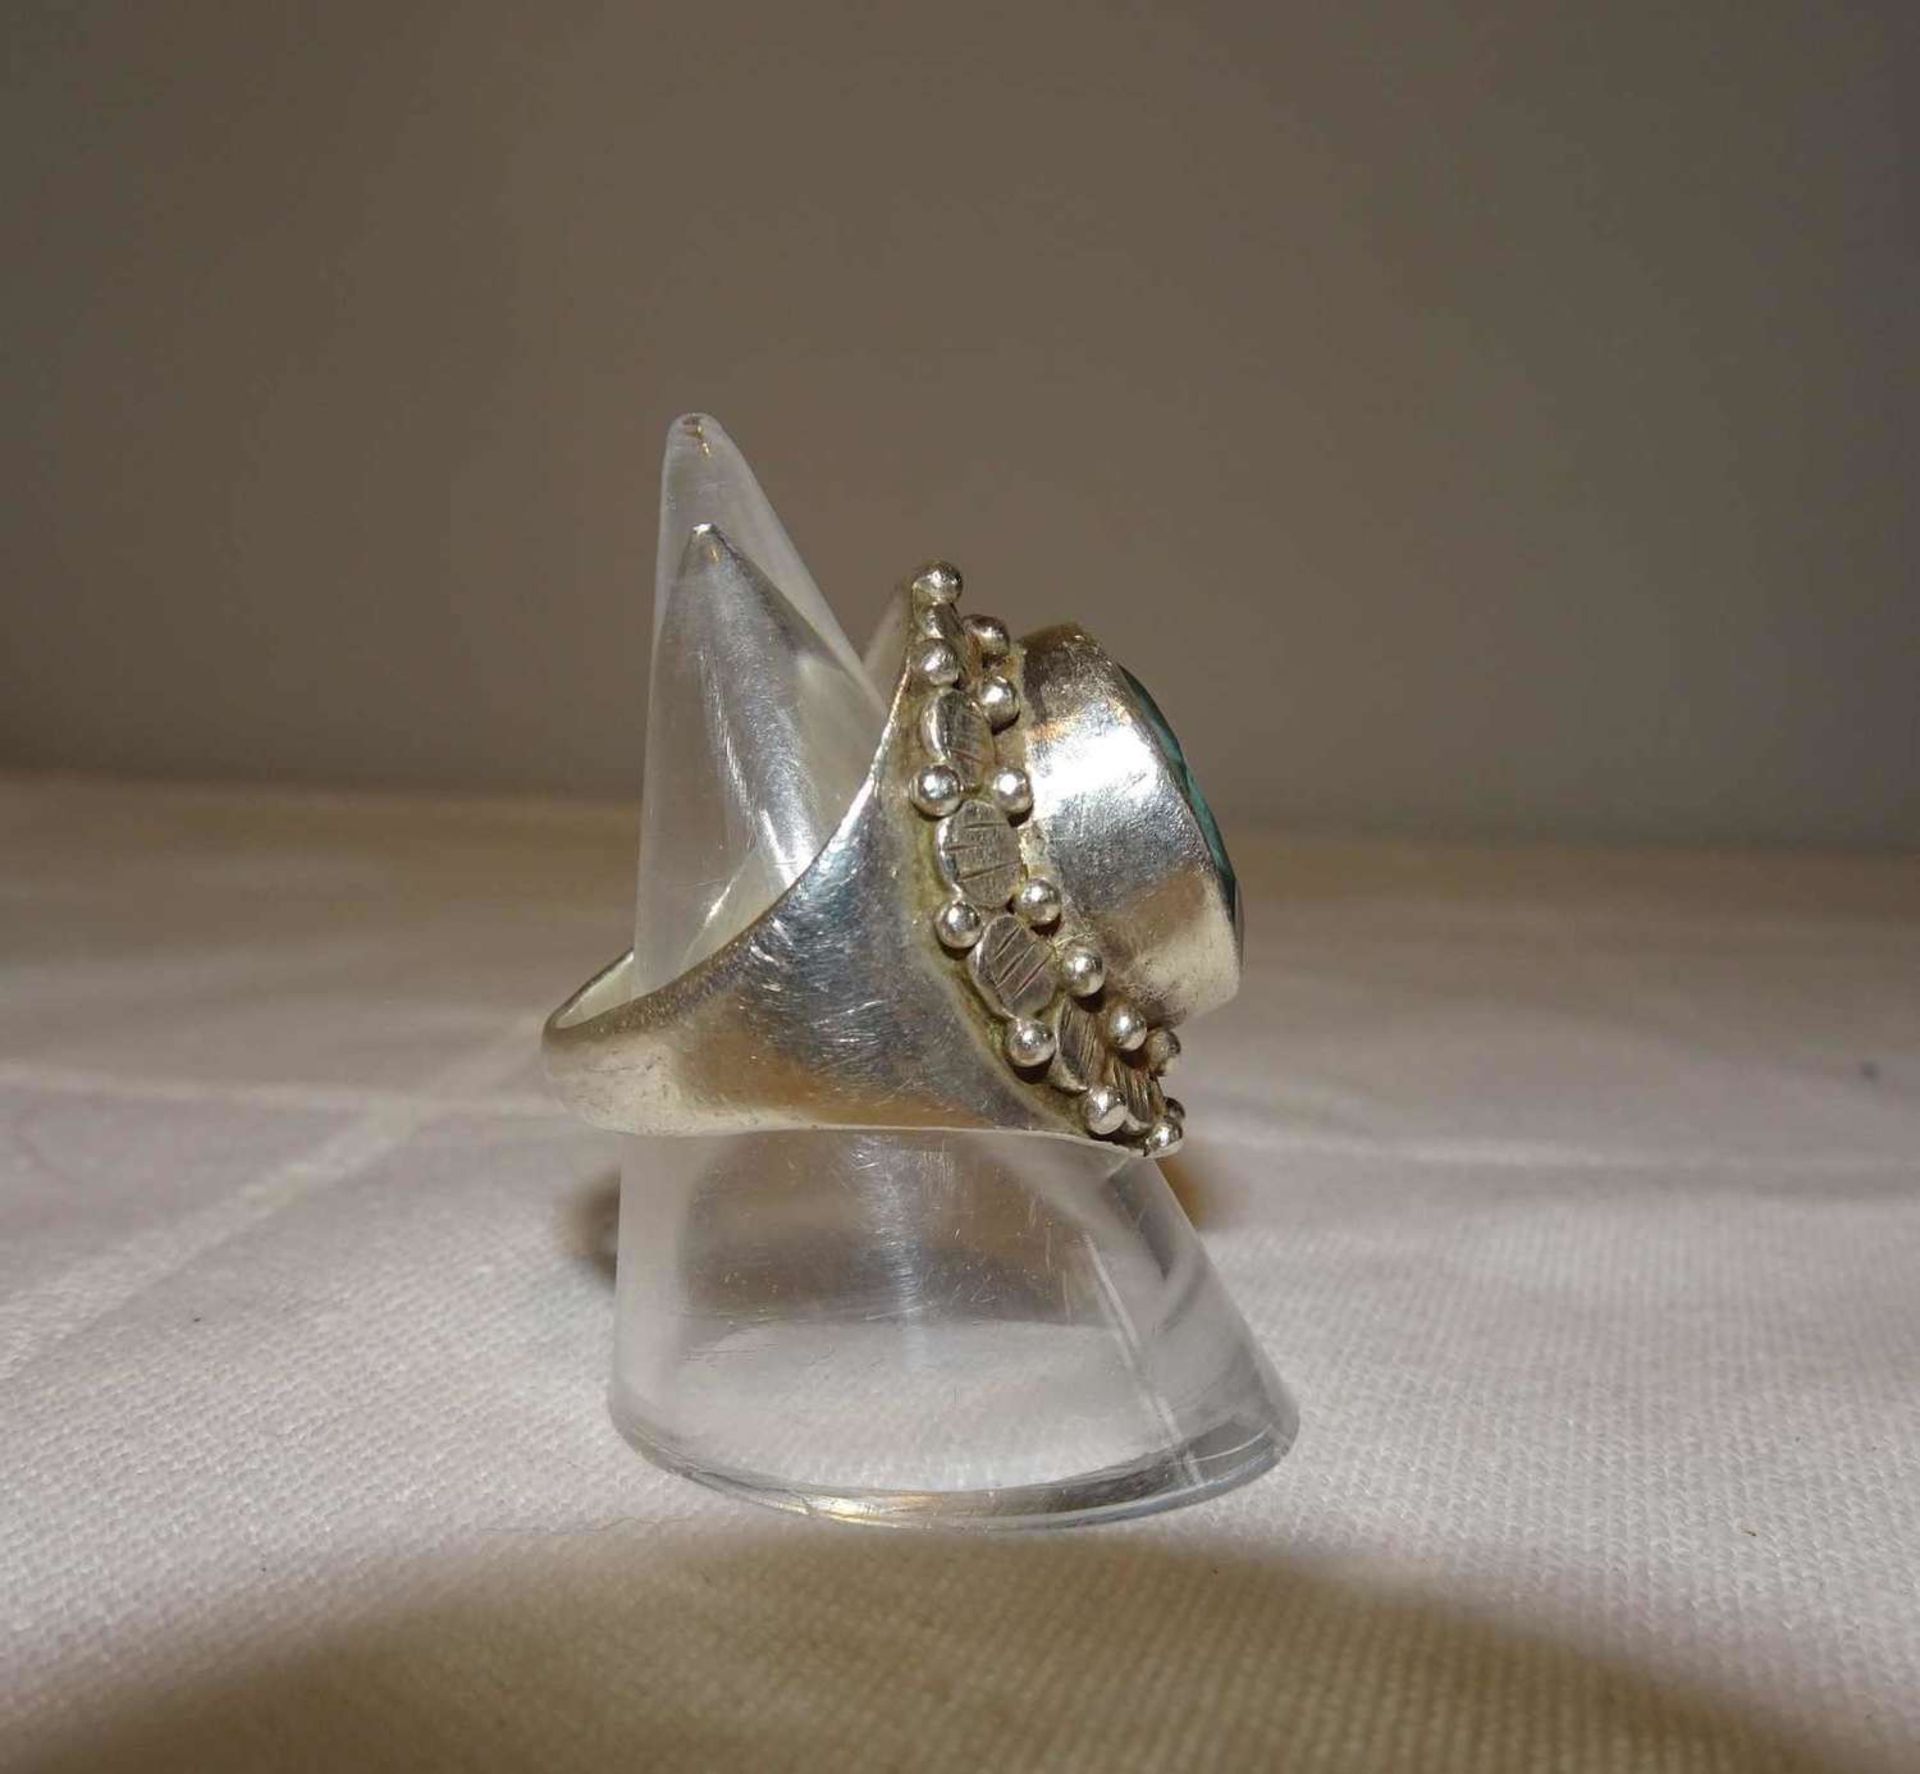 Damenring, 925er Silber, besetzt mit 1 Aquamarin. Handarbeit. Ringgröße 52, Gewicht ca. 9,3 gr. - Bild 2 aus 3